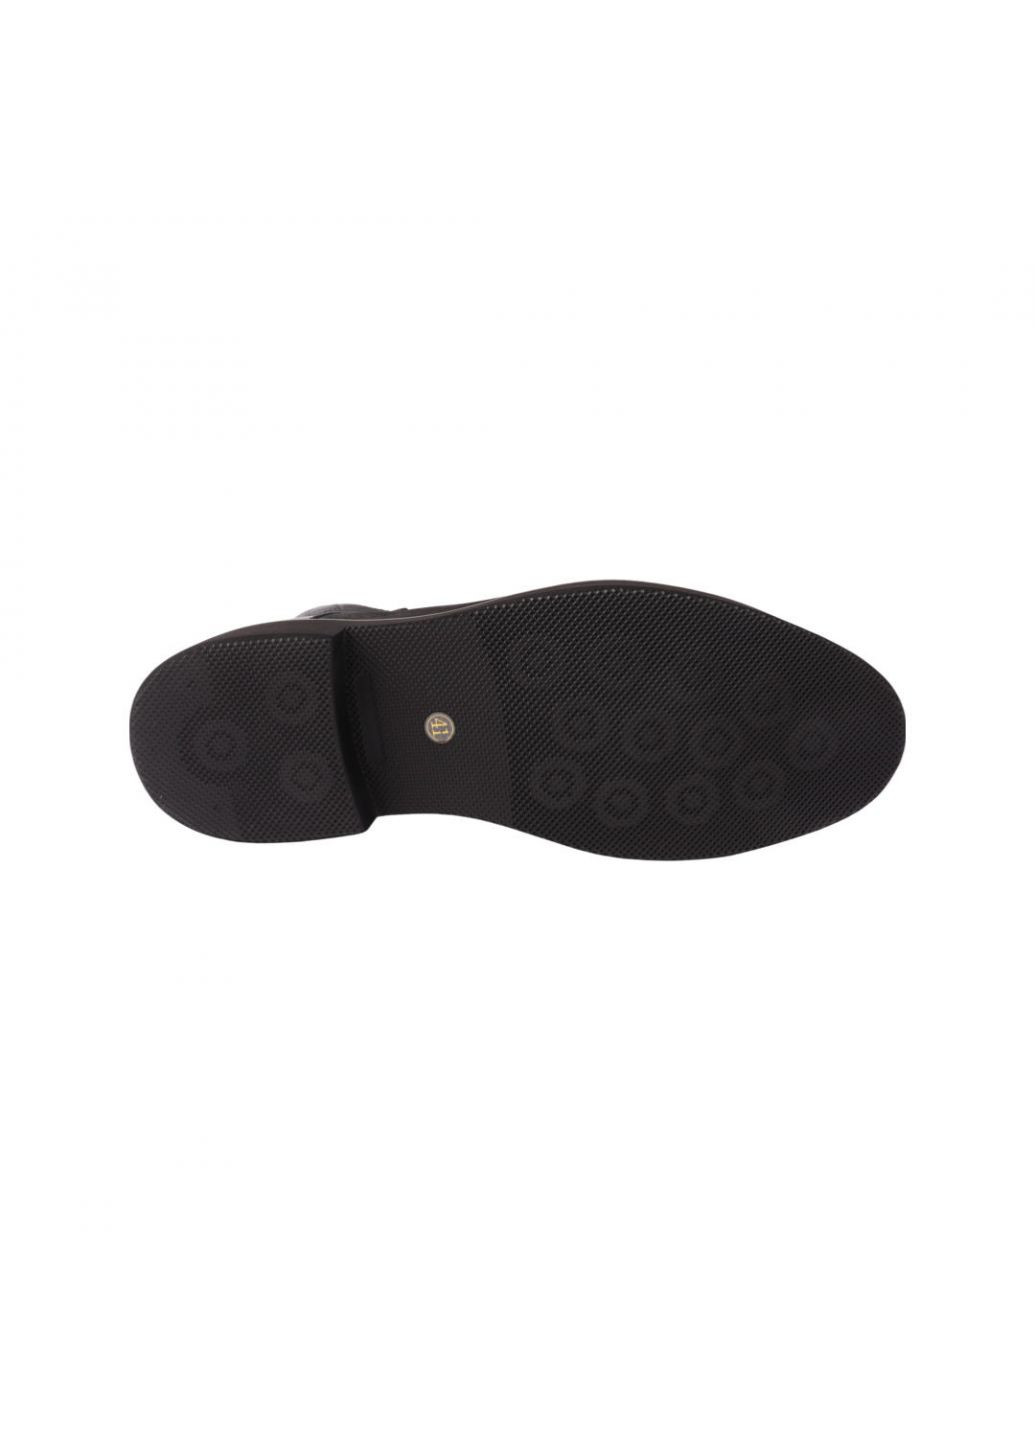 Черные ботинки мужские черные нубук Roberto Paulo